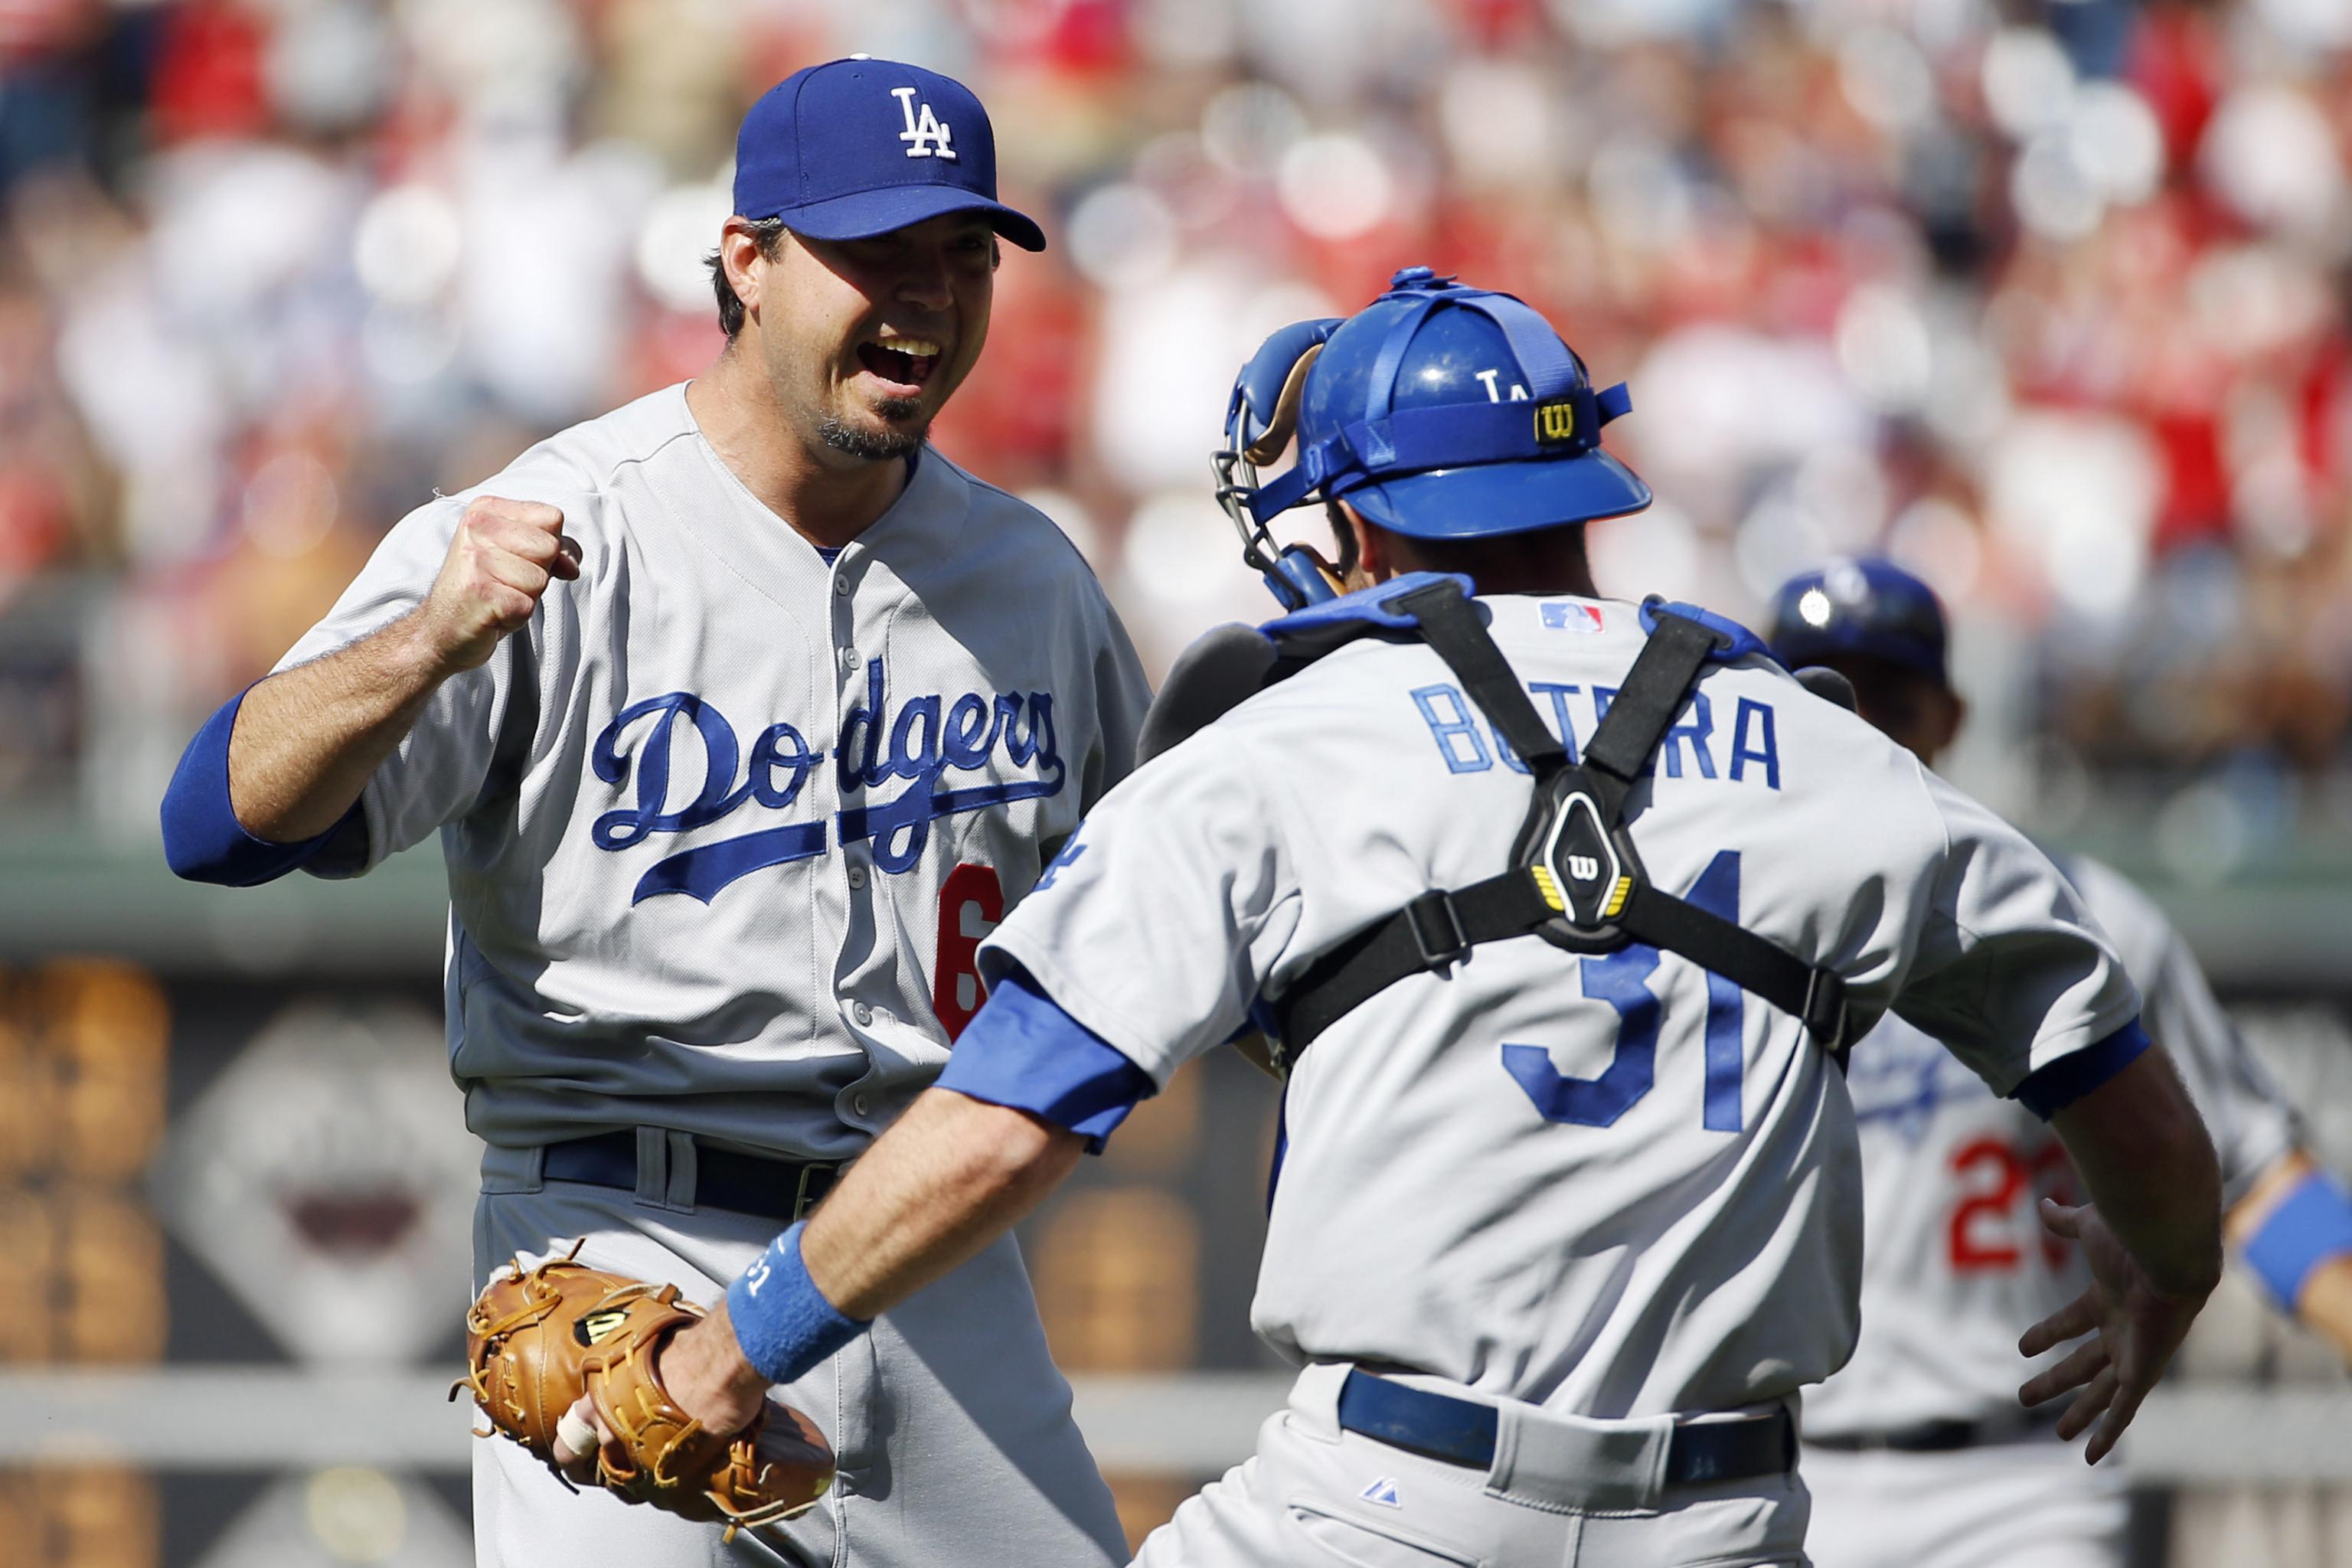 Josh Beckett retires from baseball - True Blue LA